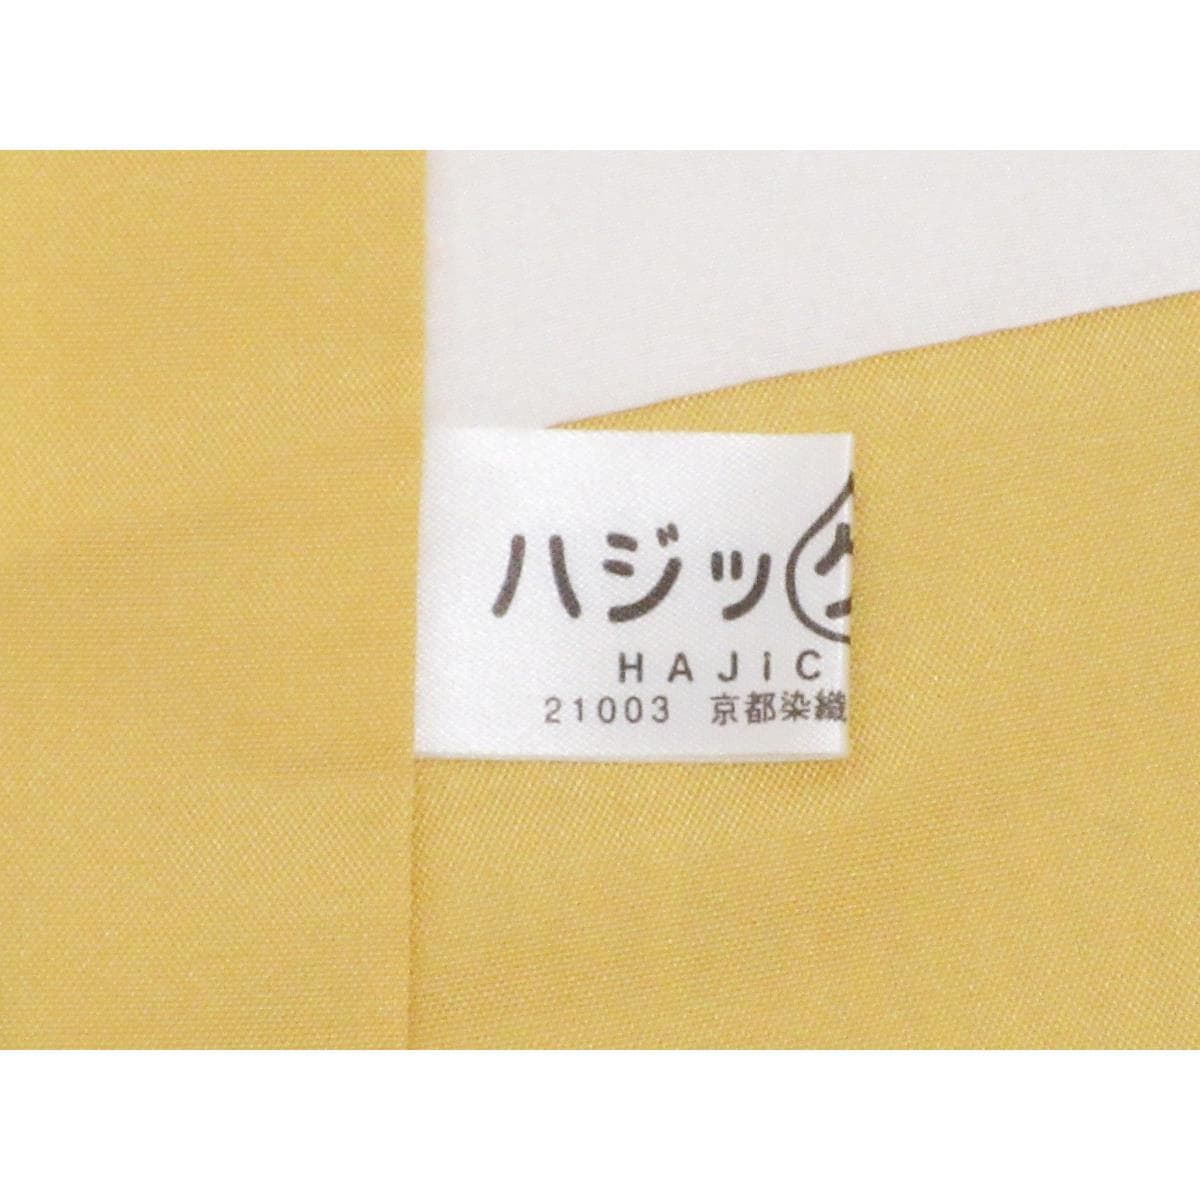 [Unused items] Tsumugi